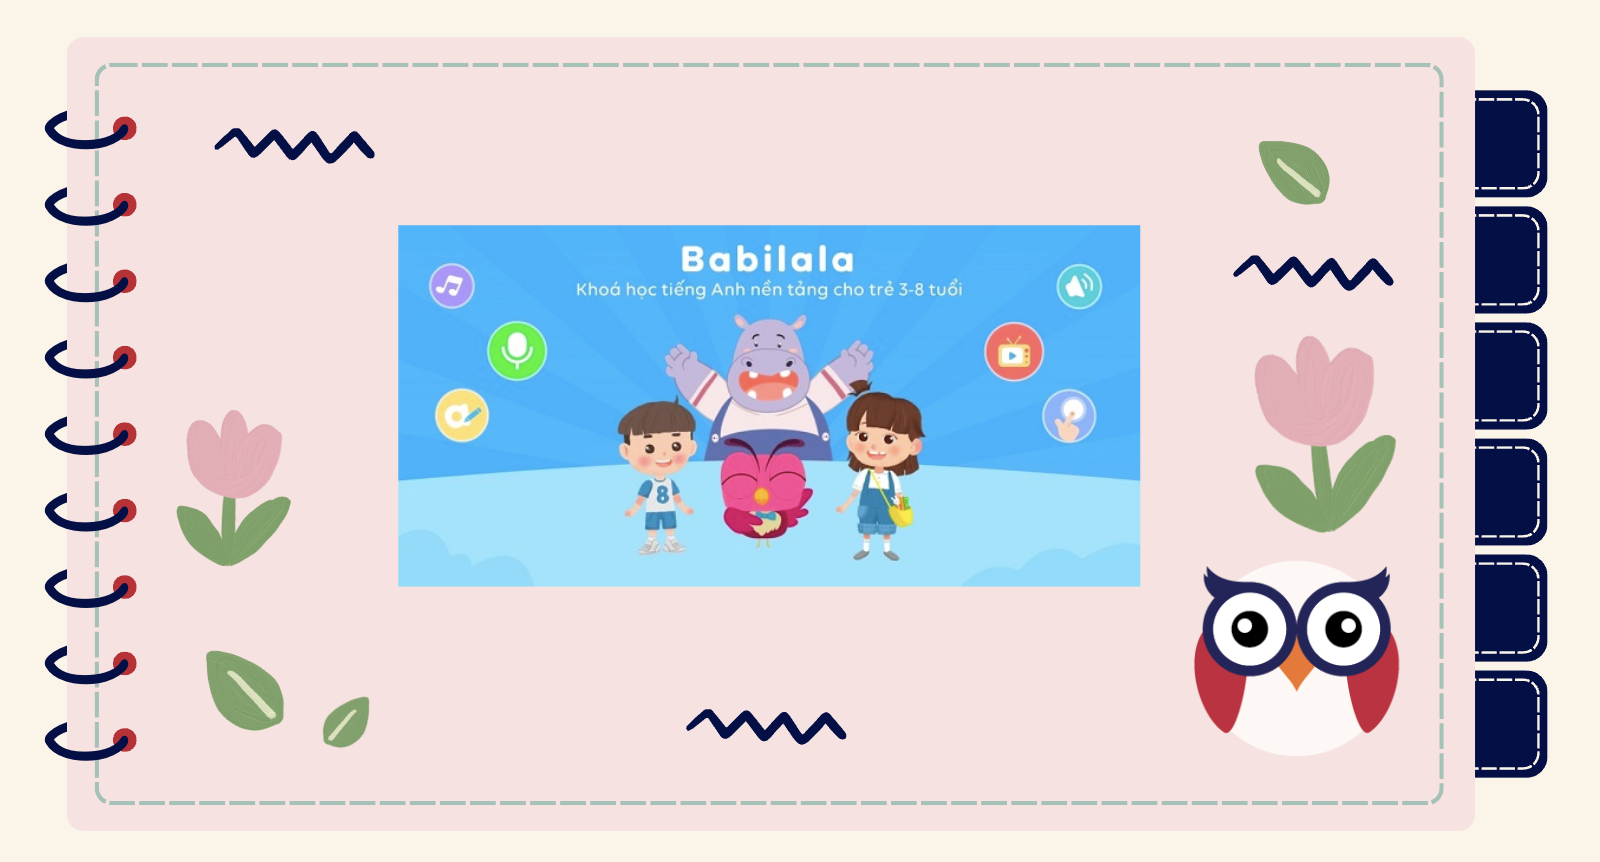 Babilala là một trong những ứng dụng tiếng Anh cho bé được đánh giá cao hiện nay.